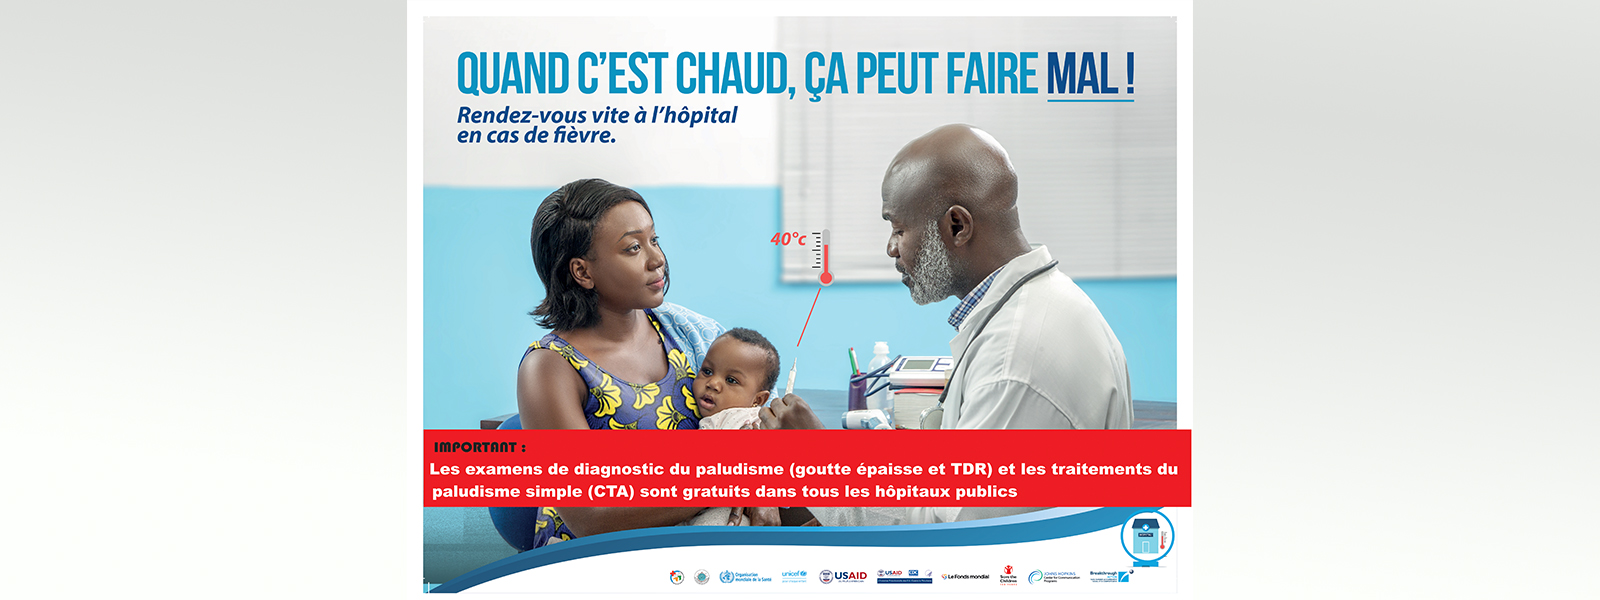 les-examens-de-diagnostic-du-paludisme-et-les-traitements-du-paludisme-simple-sont-gratuits-dans-tous-les-hopitaux-publics